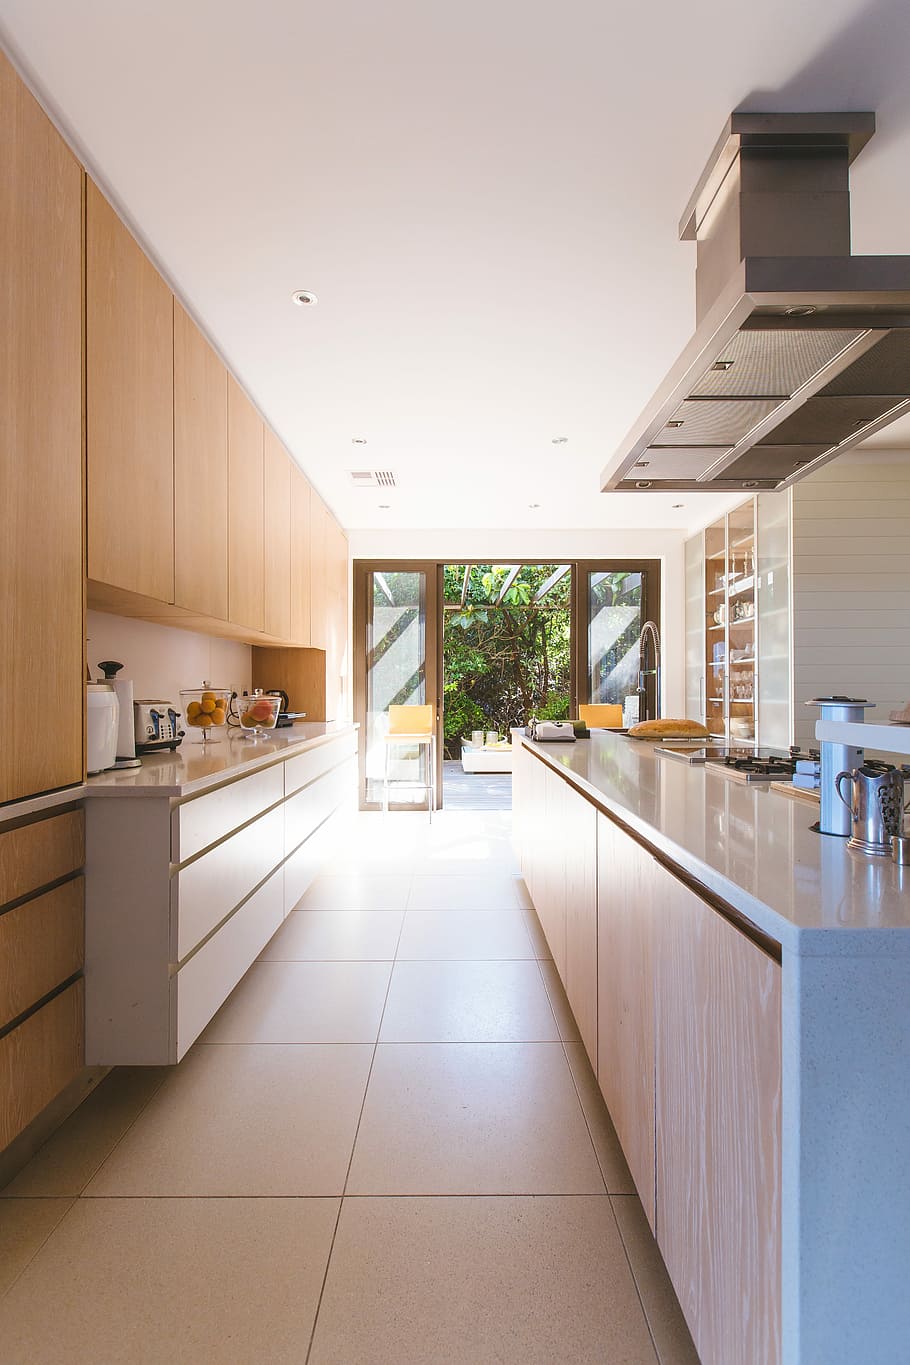 9 DIY Kitchen Cabinet Ideas